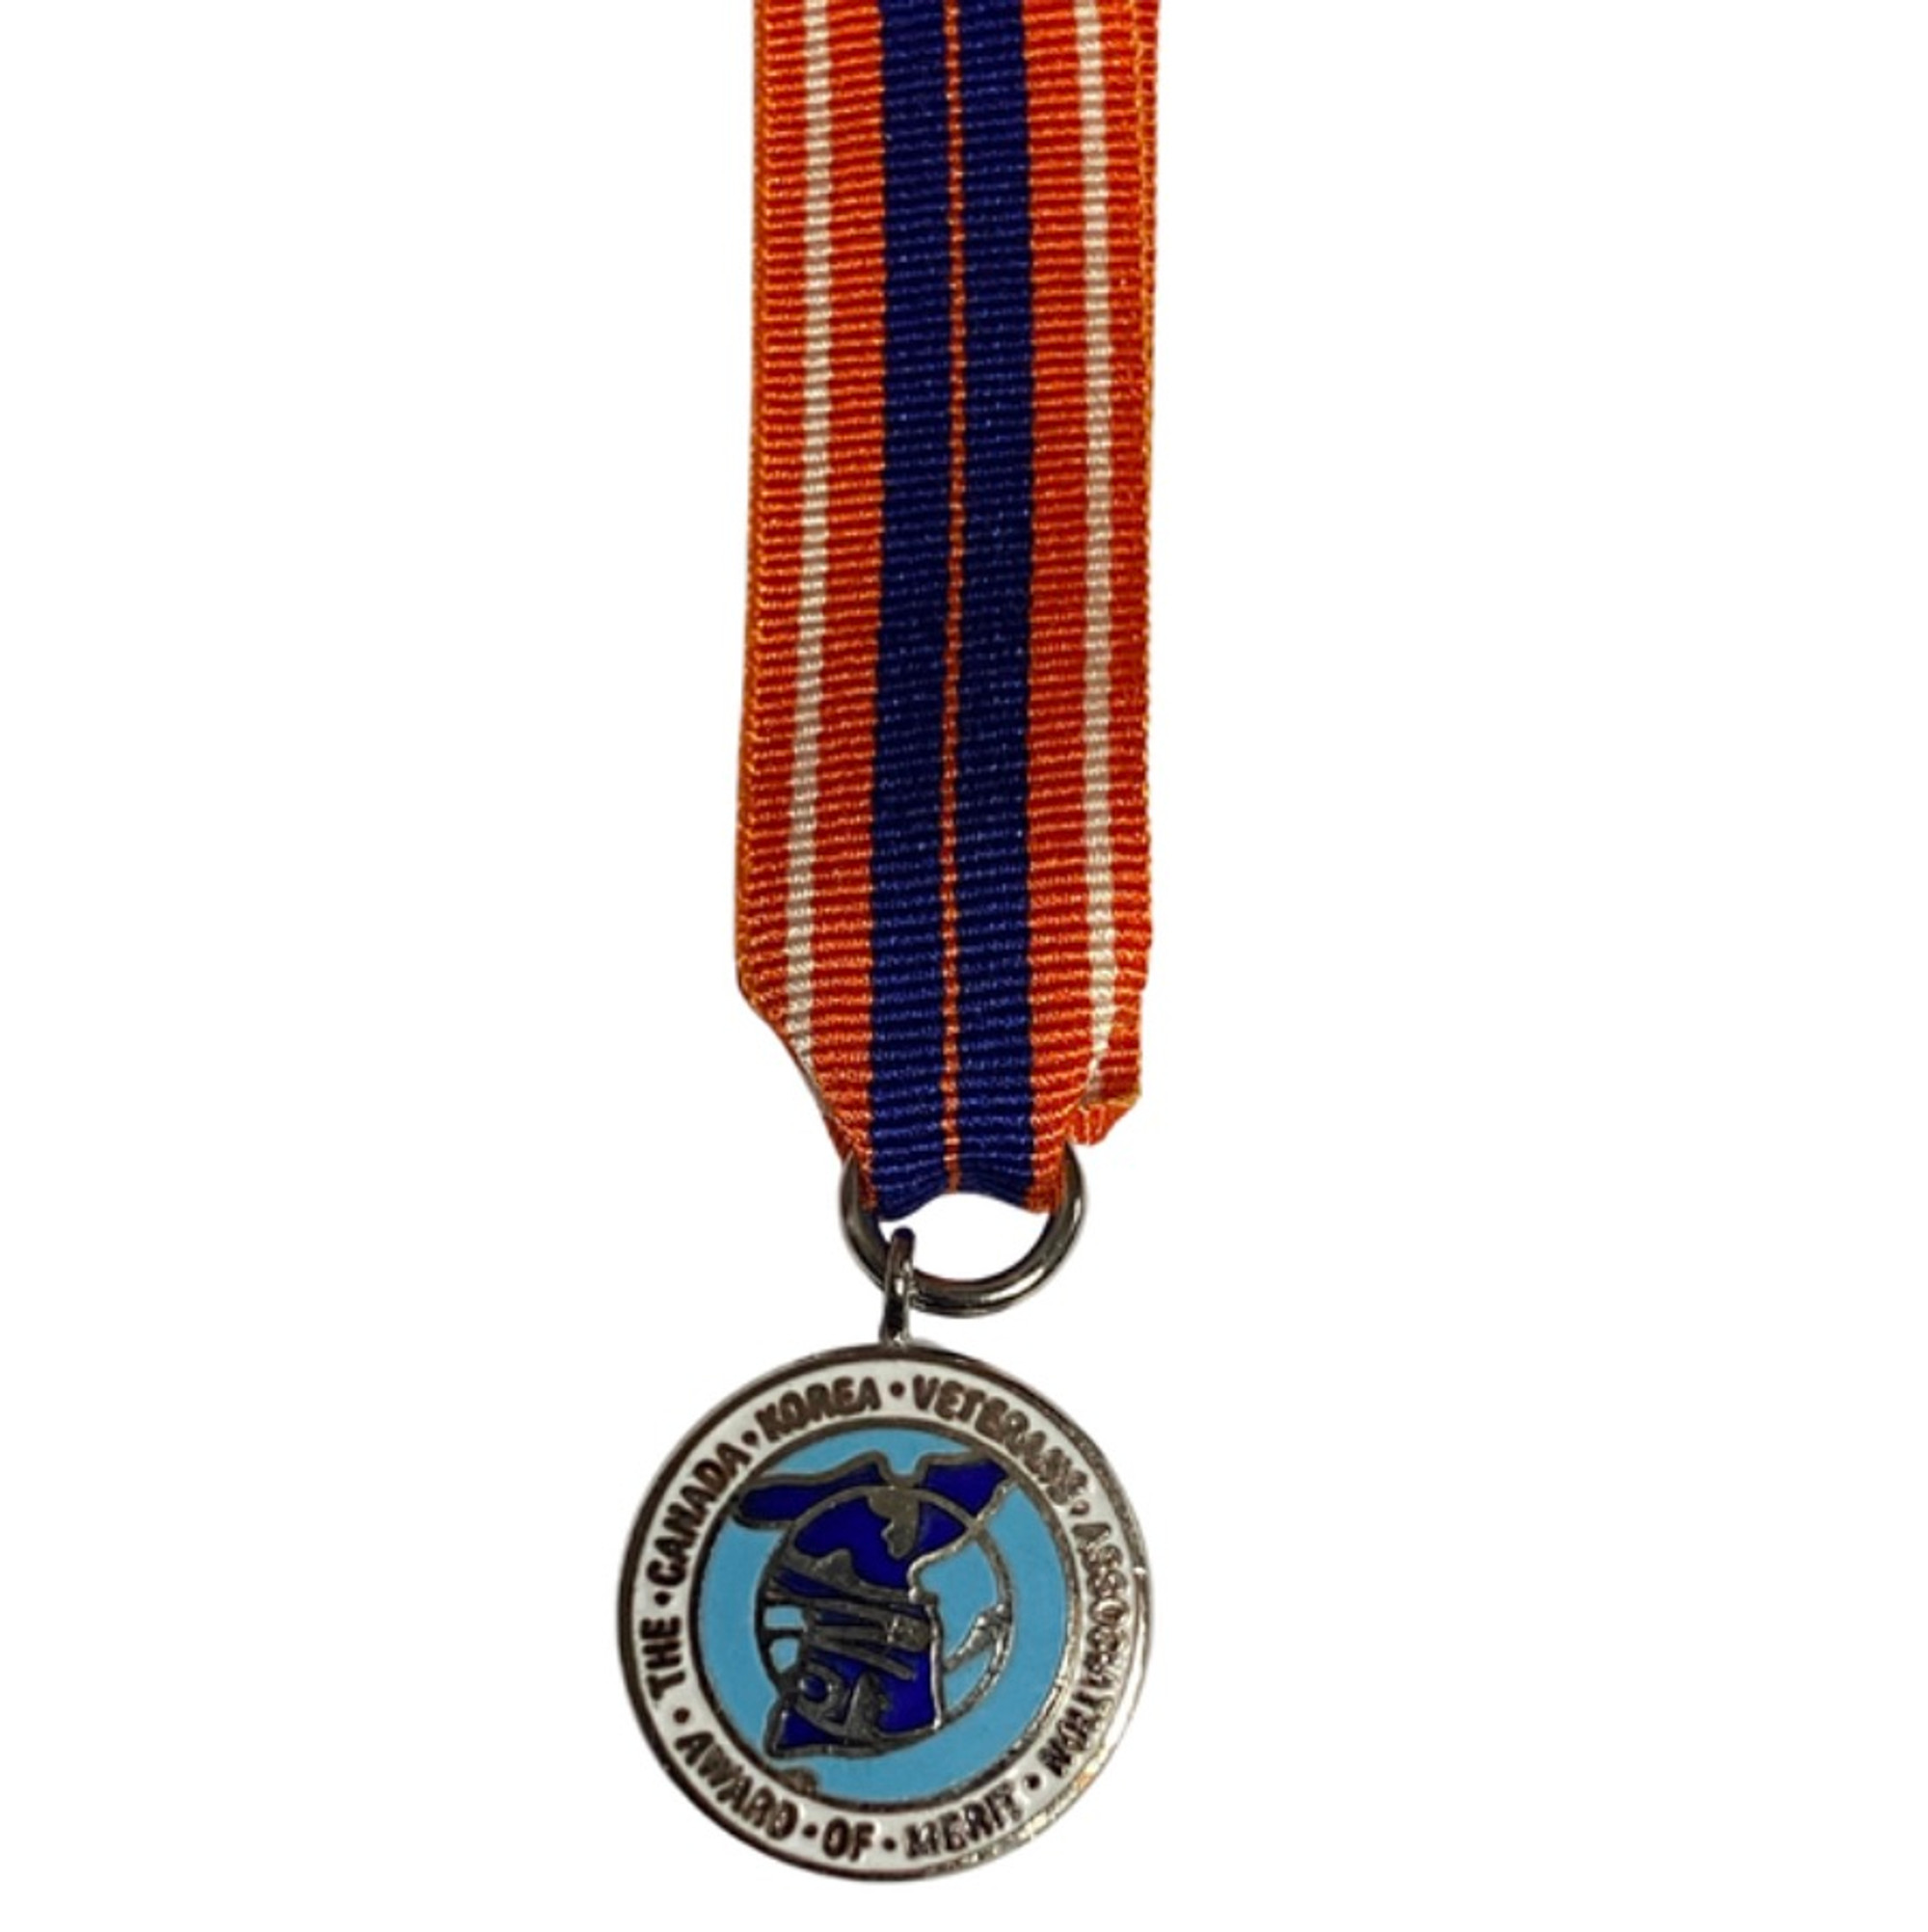 Korea Veterans Association Award of Merit Miniature Medal